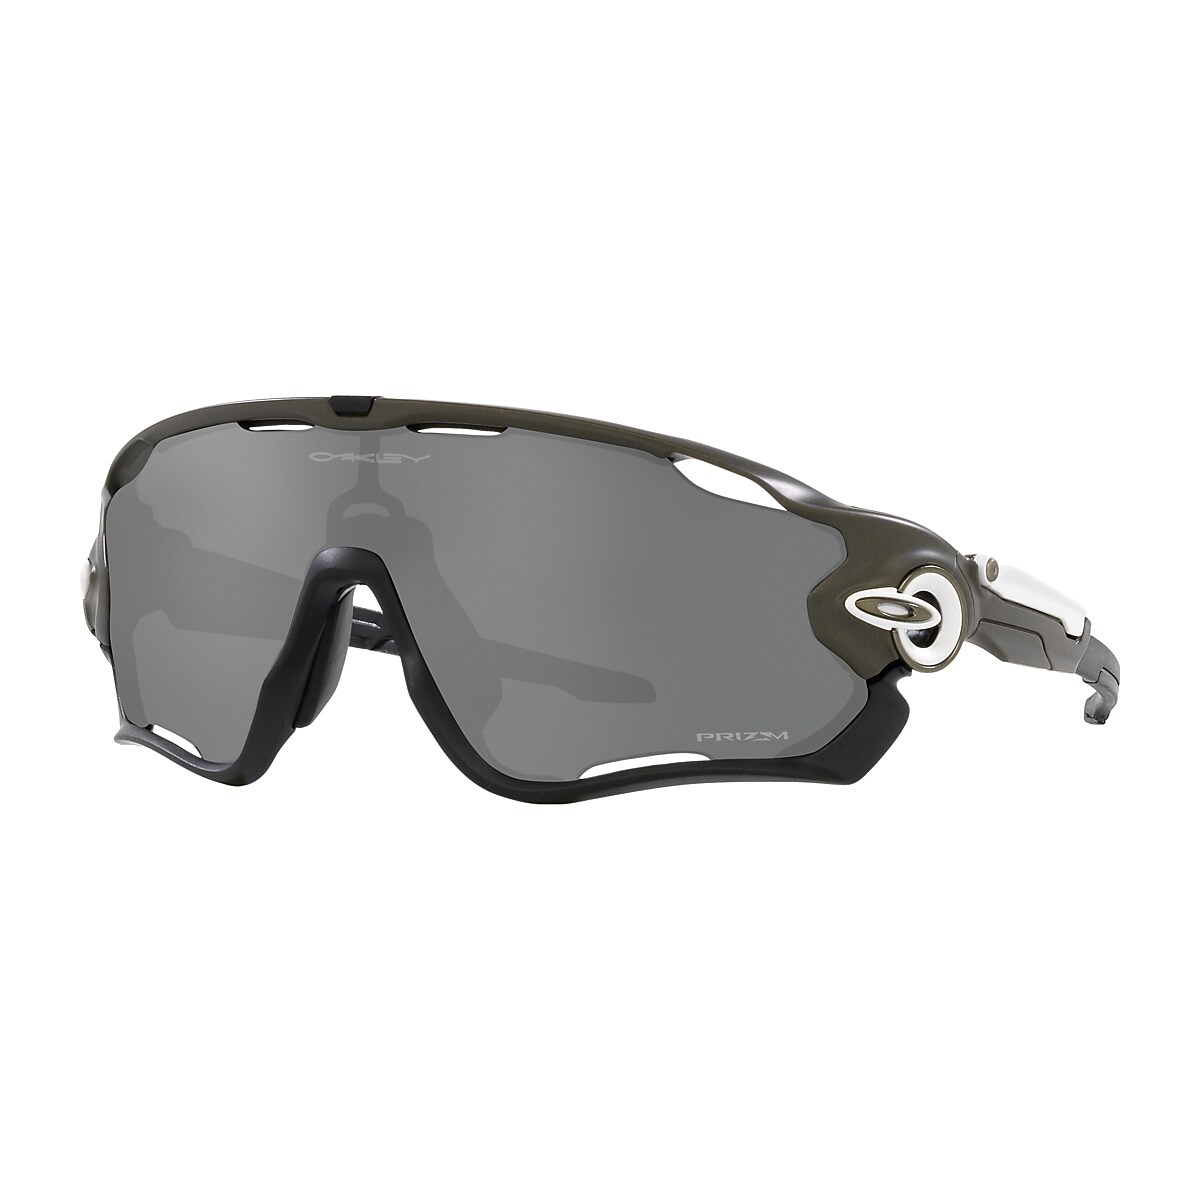 Jawbreaker™ Prizm Black Lenses, Matte Olive Frame Sunglasses 